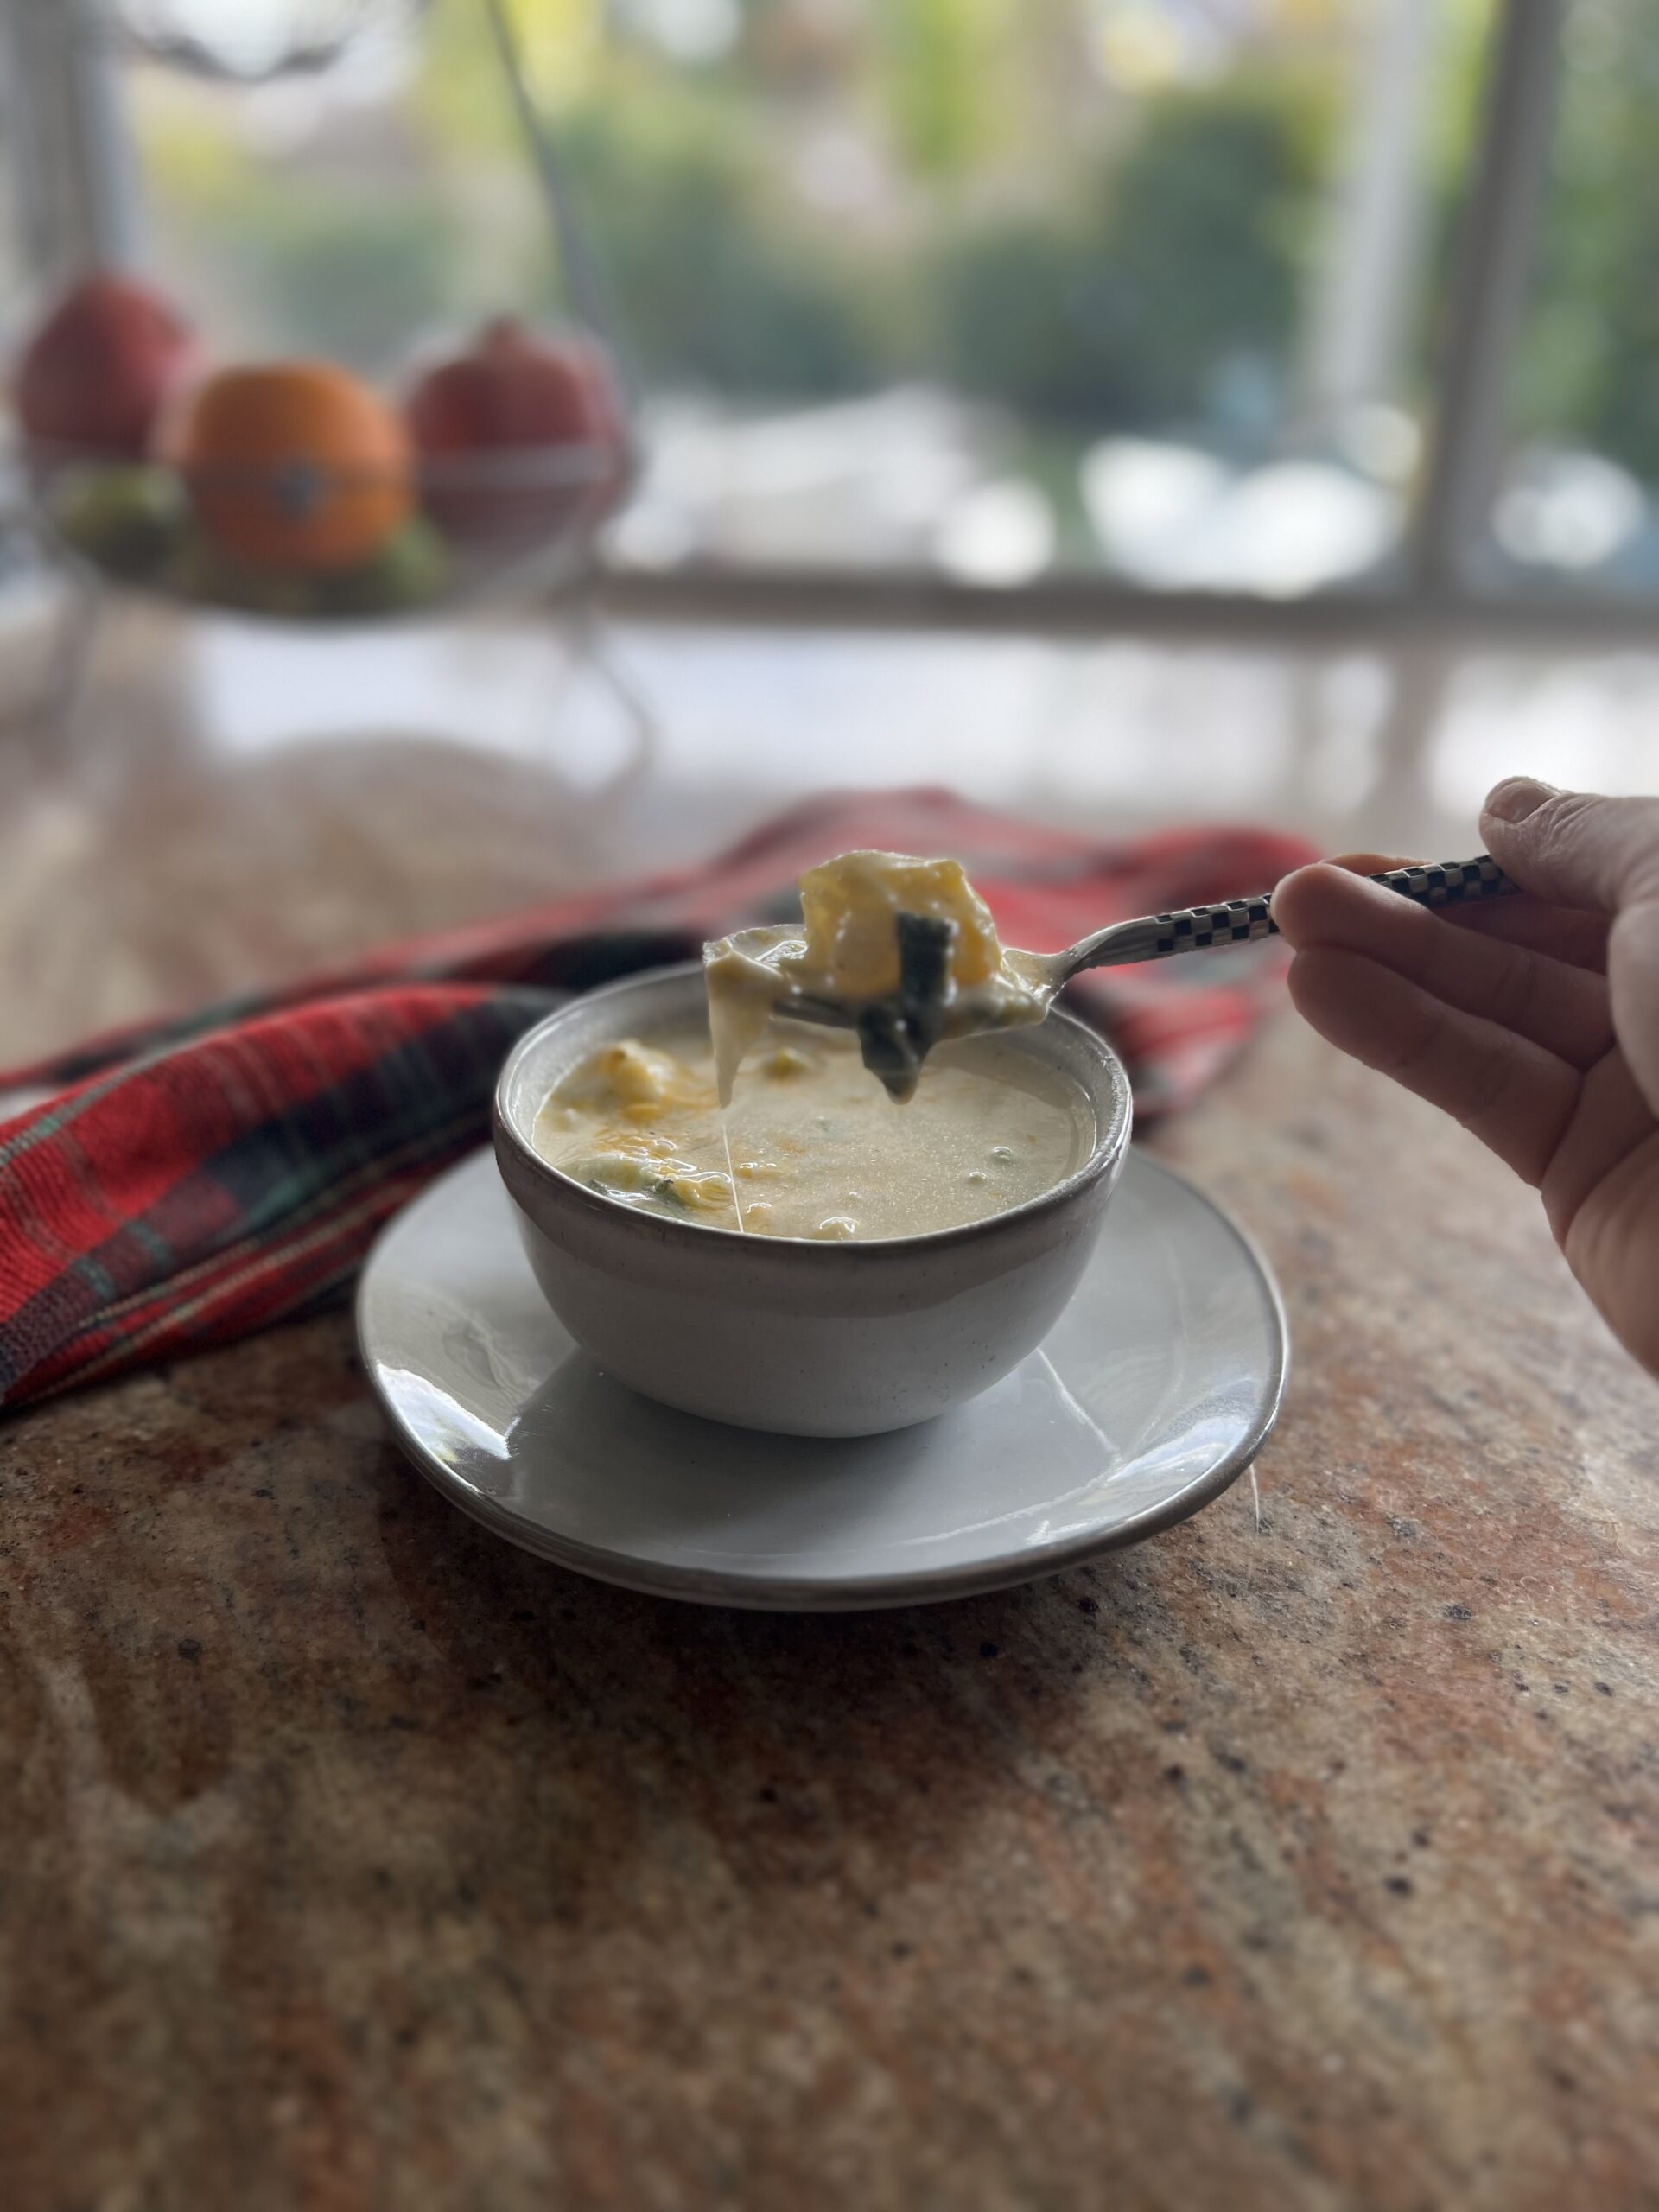 Creamy Potato Leek Soup